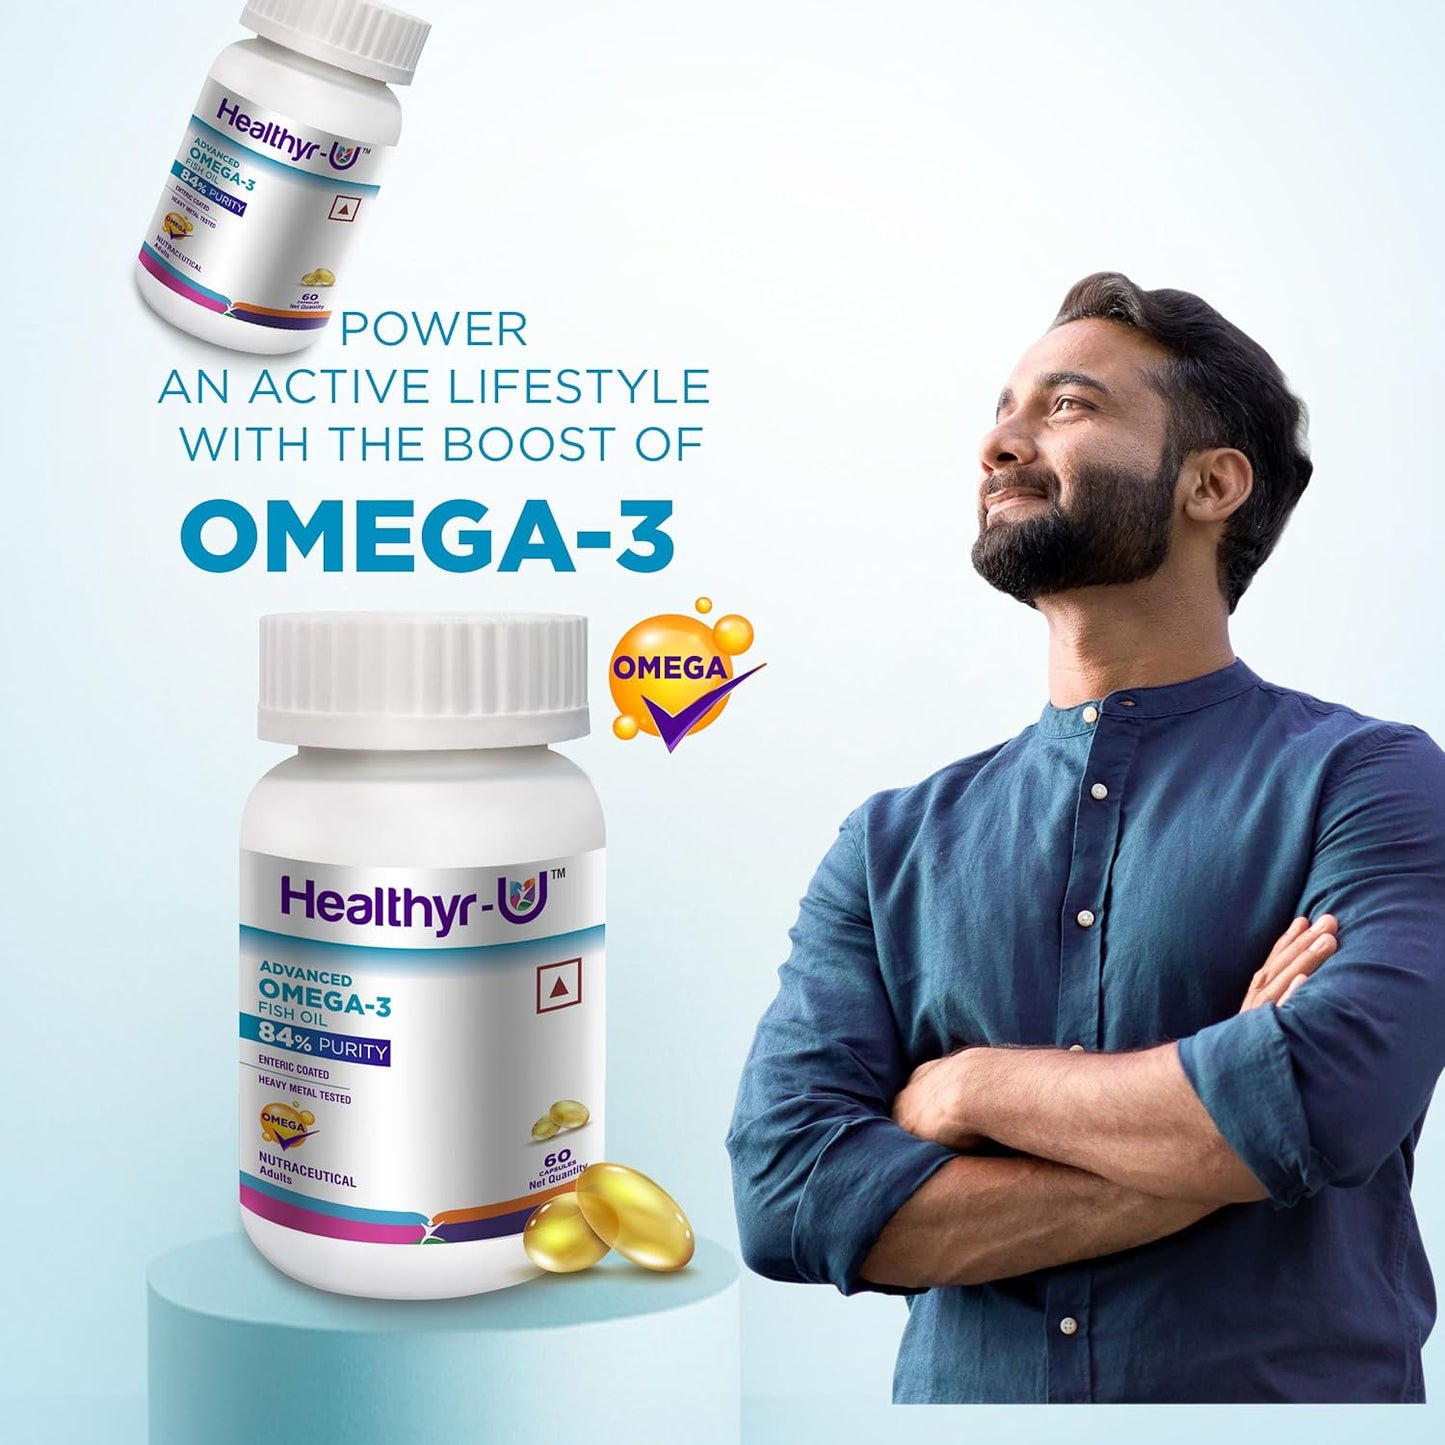 Advanced Omega 3 Fish Oil (84% purity) Capsules